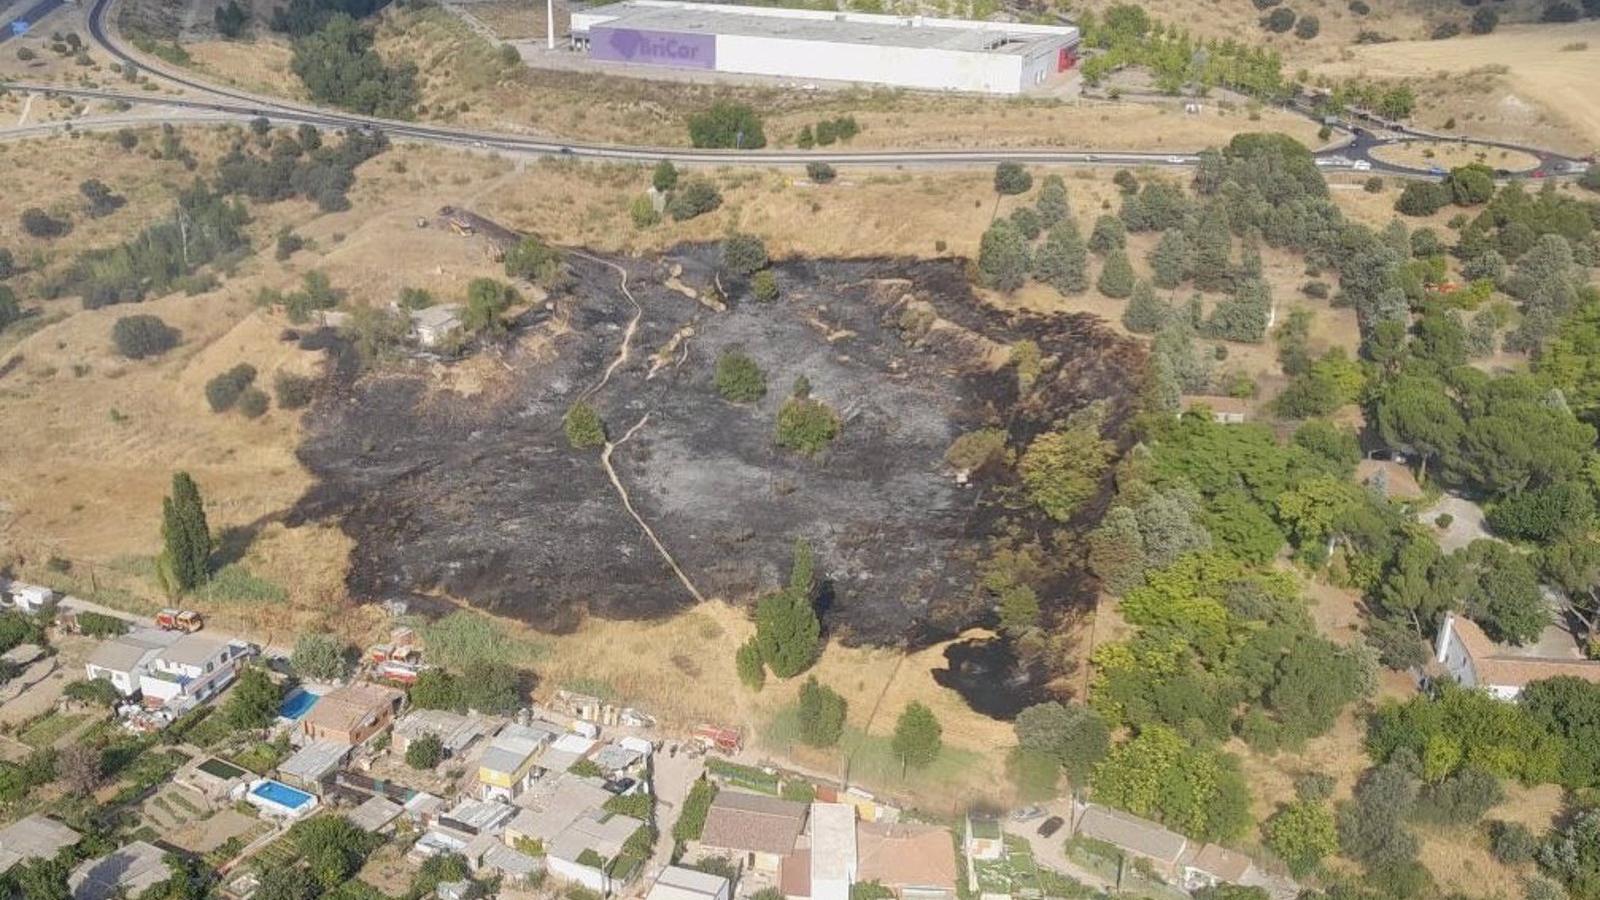  Arden cuatro hectáreas en un fuego de pastos en Arroyomolinos